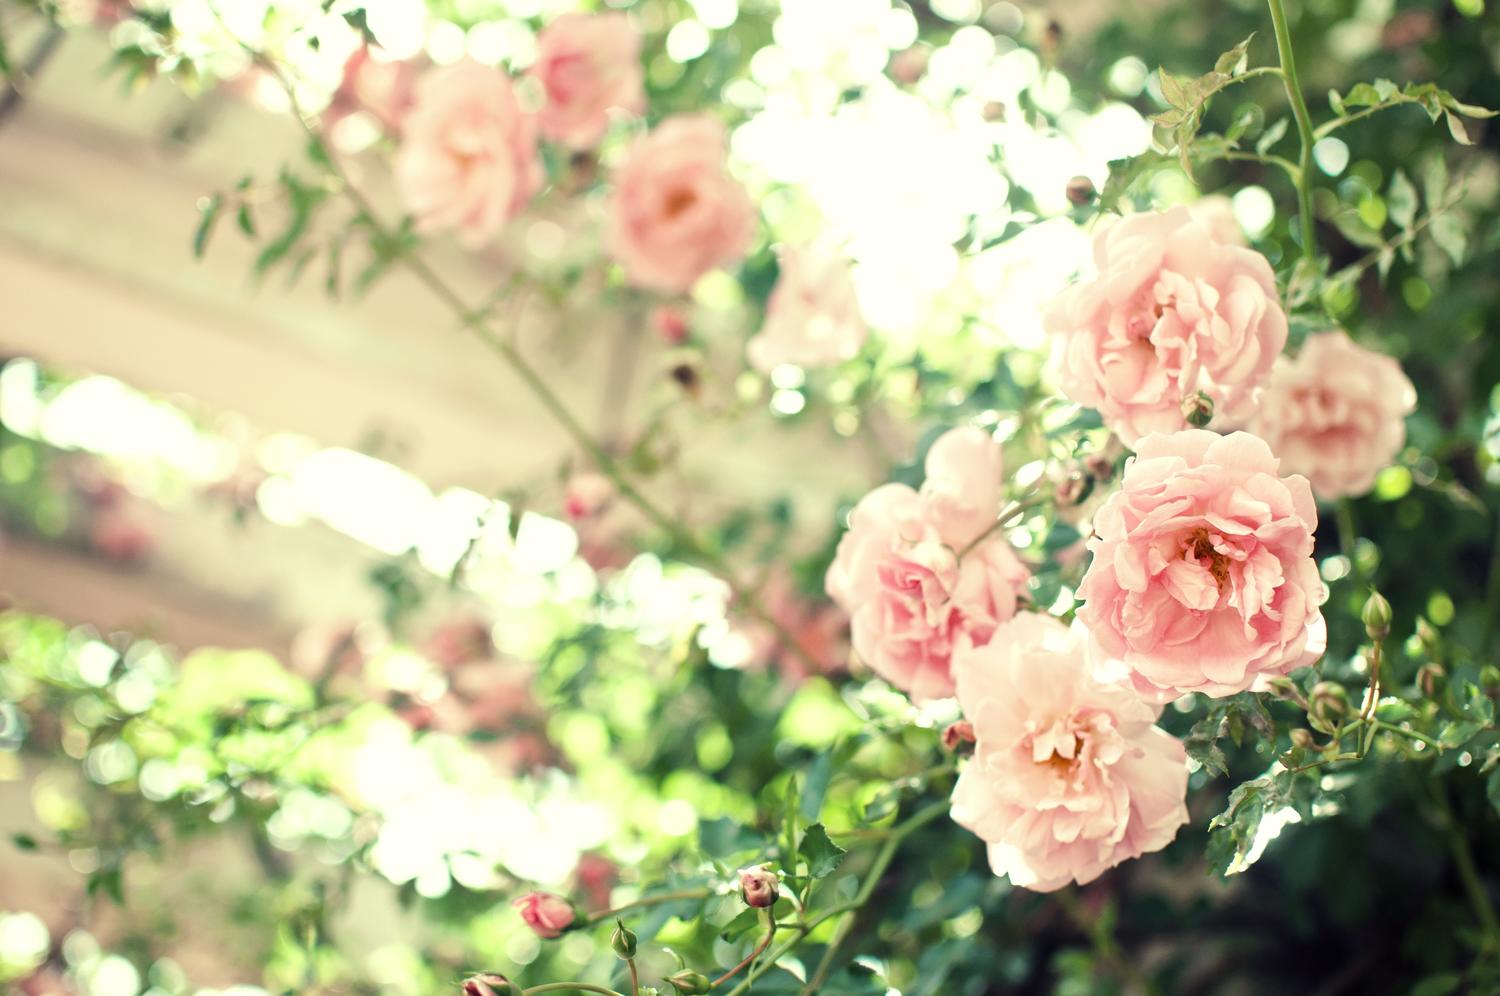 蓼科高原バラクライングリッシュガーデン のバラの見ごろやバラまつりとバラ園情報 バラ園案内 バラの見ごろと開花状況